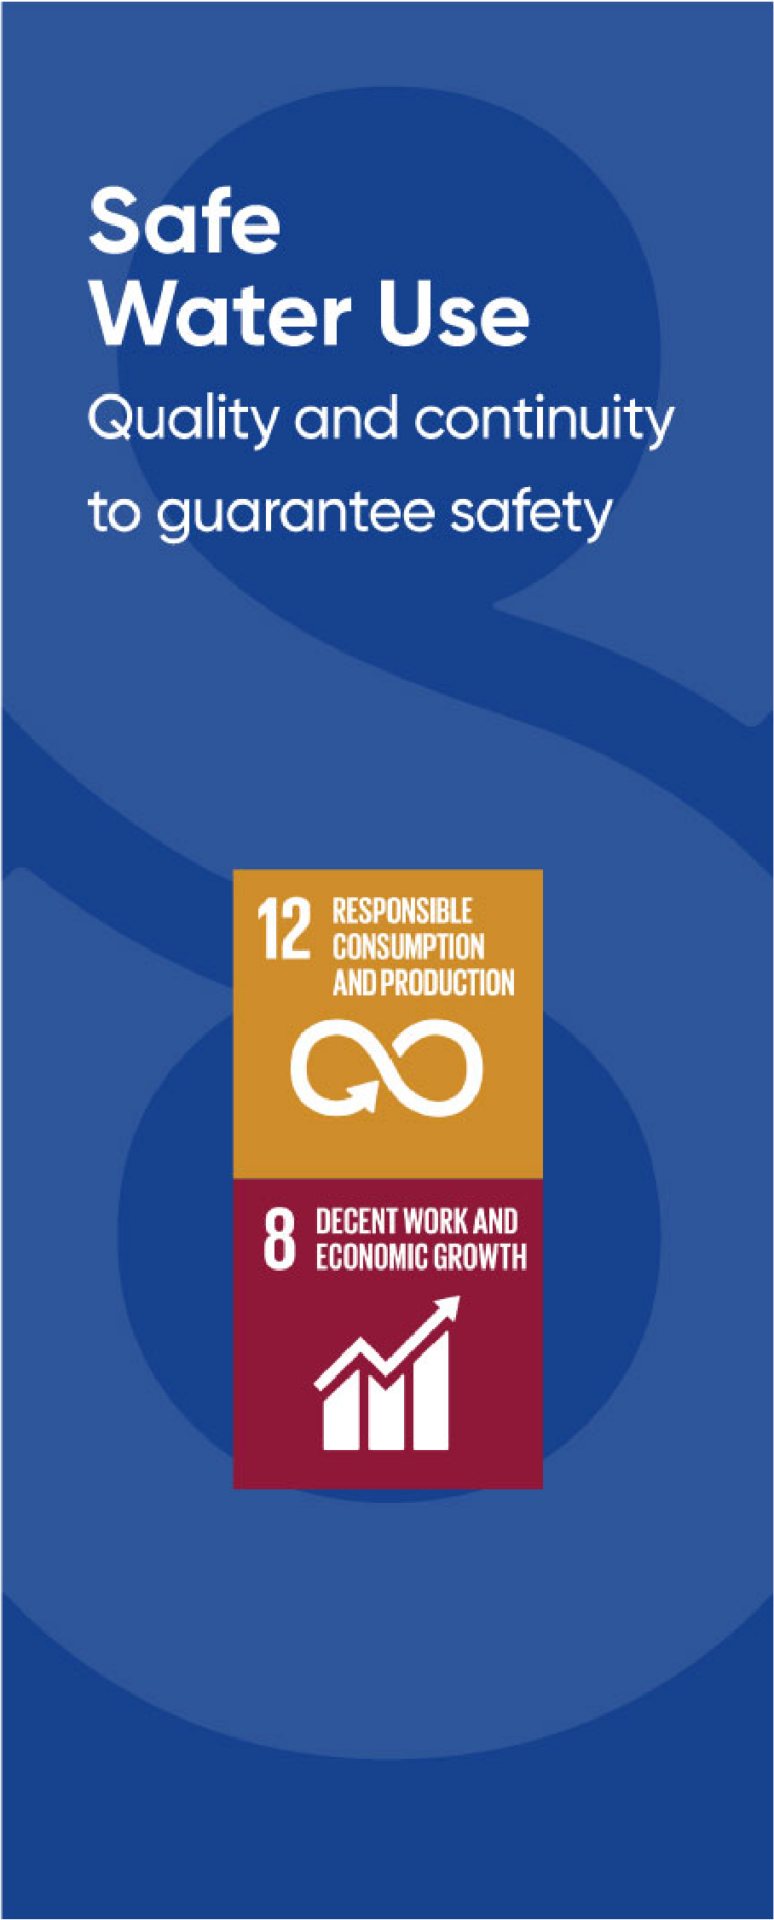 Symboles de certains piliers du développement durable: Responsible consumption and production, decent work and economic growth.